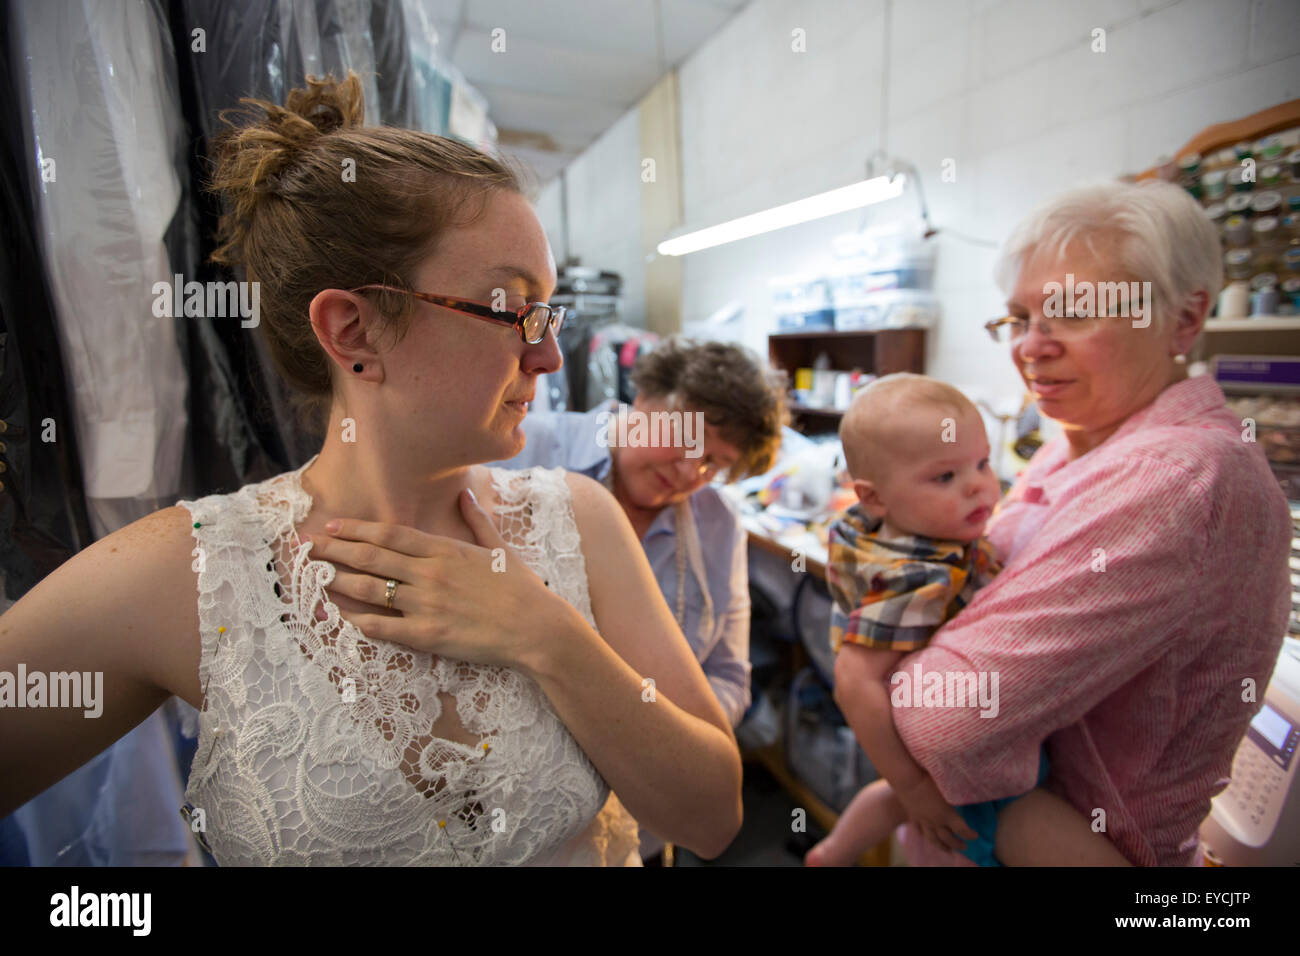 Broomfield, Colorado - Eine junge Frau wird mit einer Hochzeit Kleid ausgestattet, während ihre Mutter ihr Baby hält. Stockfoto